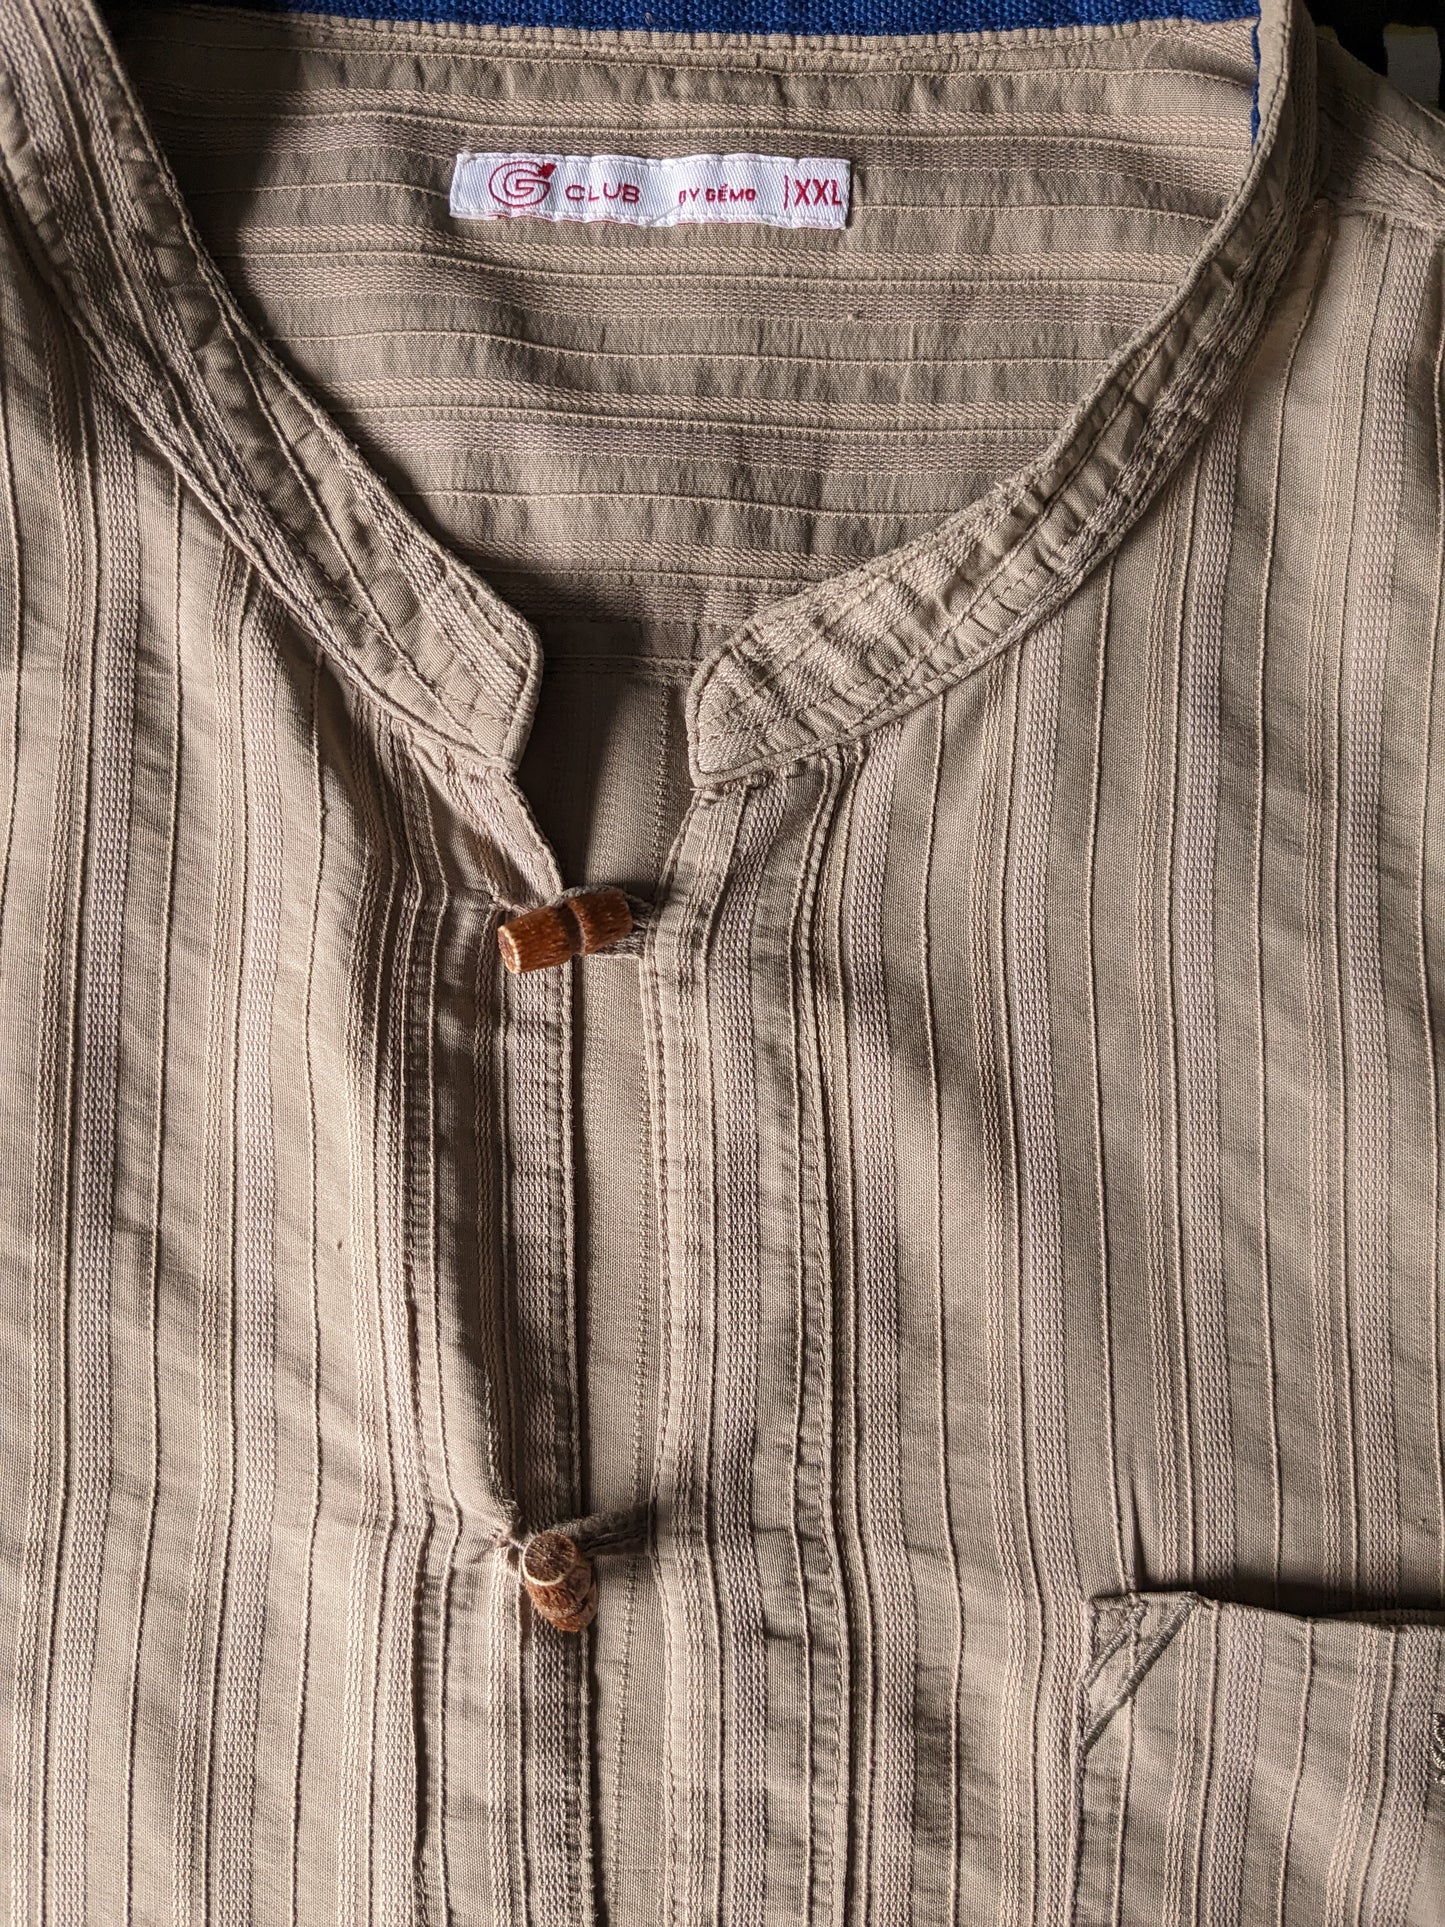 Shirt g-club / polo mao / colletto rialzato con bottoni in legno. Motivo marrone chiaro. Dimensione XXL / 2XL.